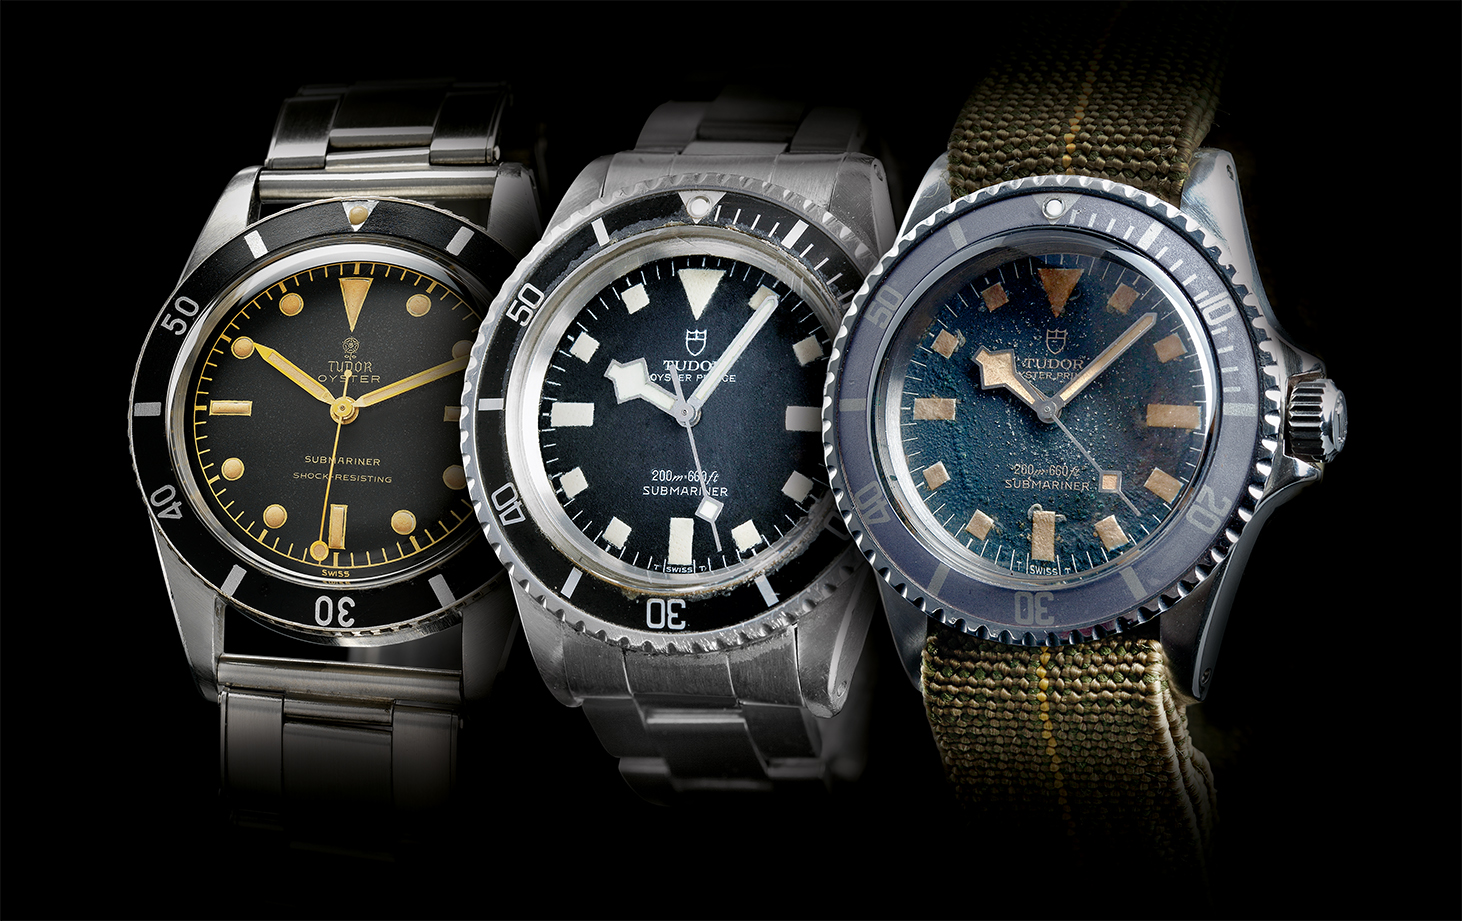 Tudor Watches